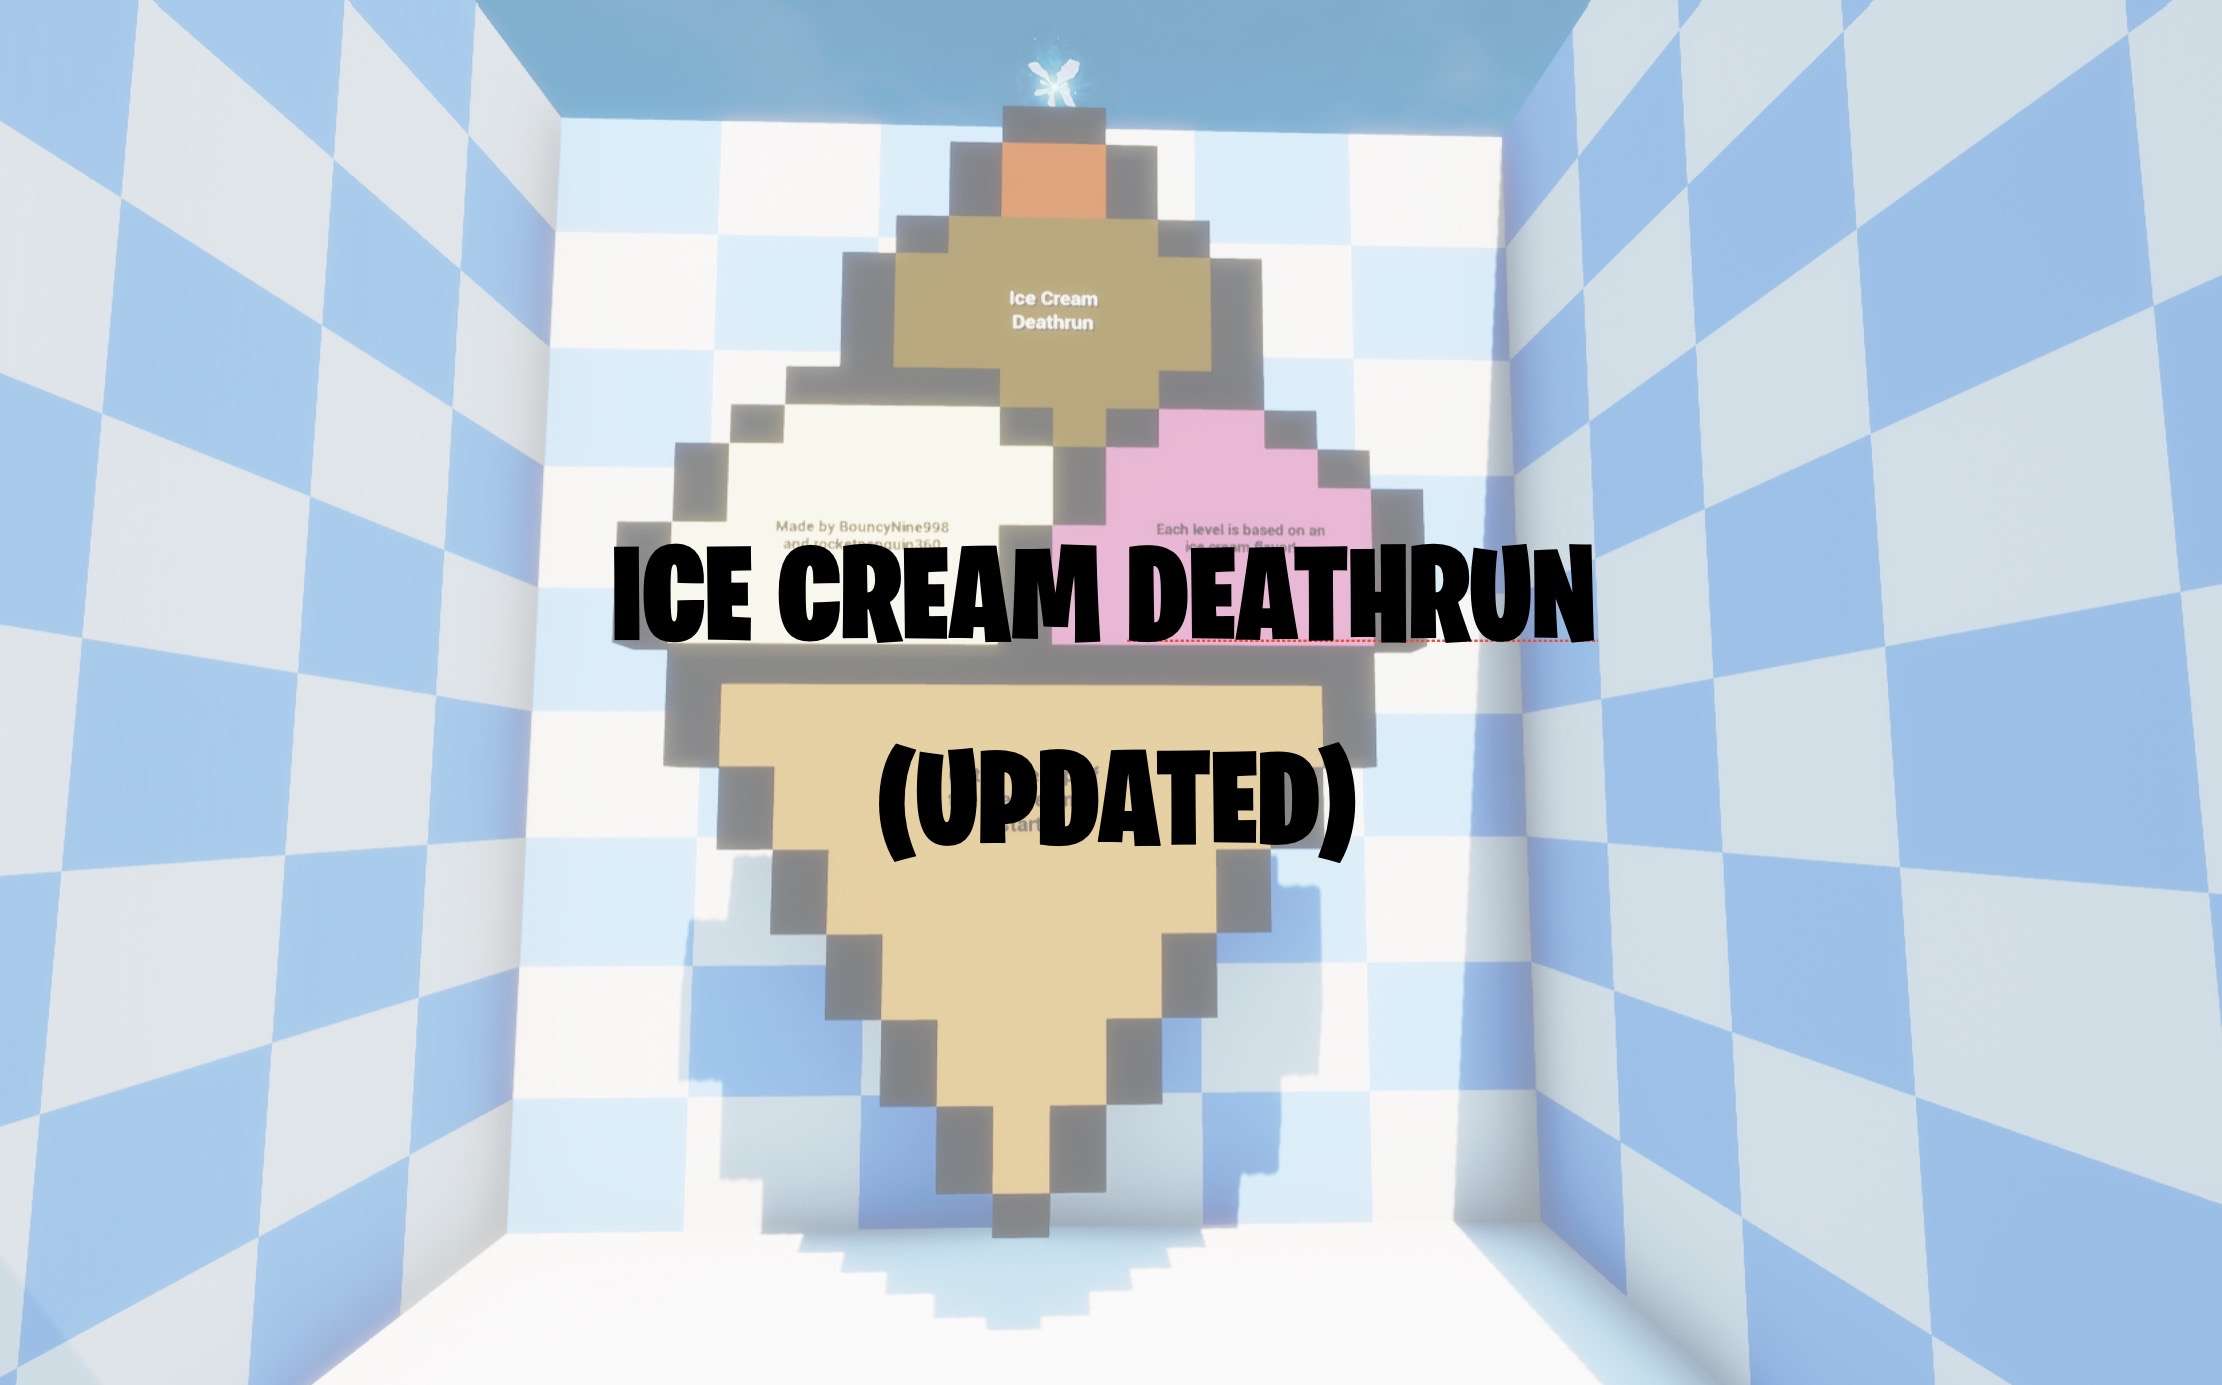 ICE CREAM DEATHRUN